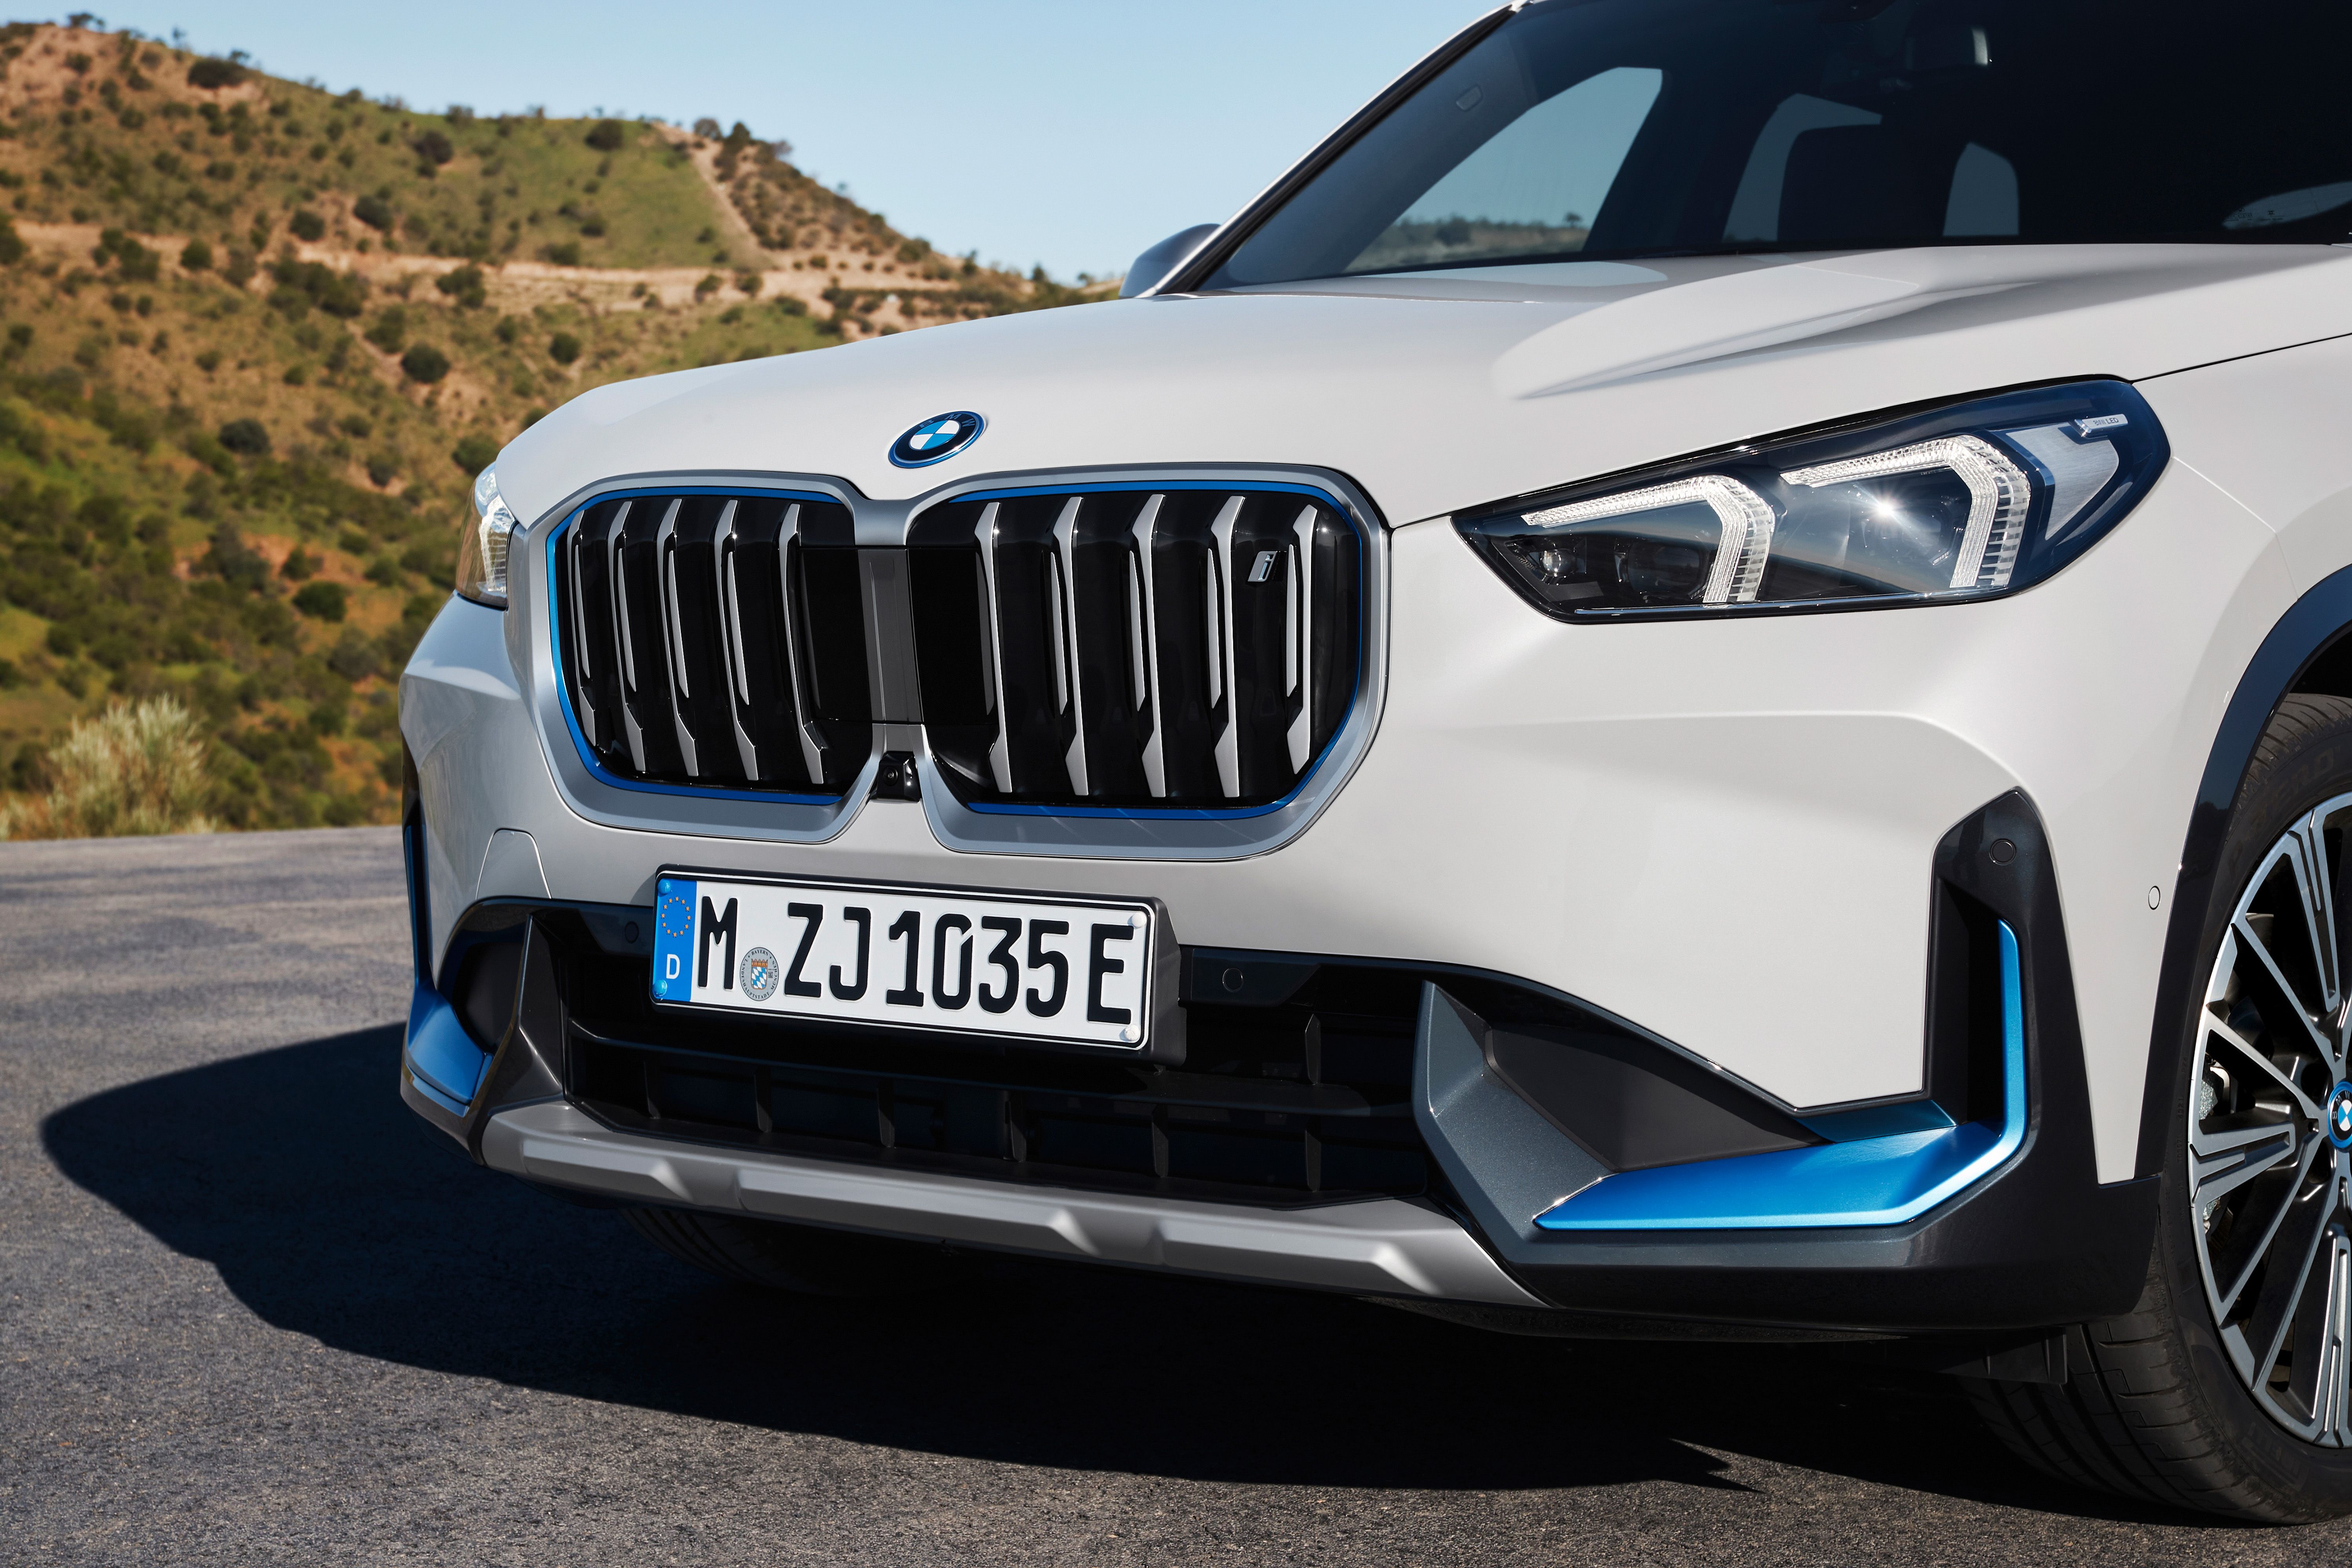 BMW completa la gama del SUV X1 con una versión 100% eléctrica y